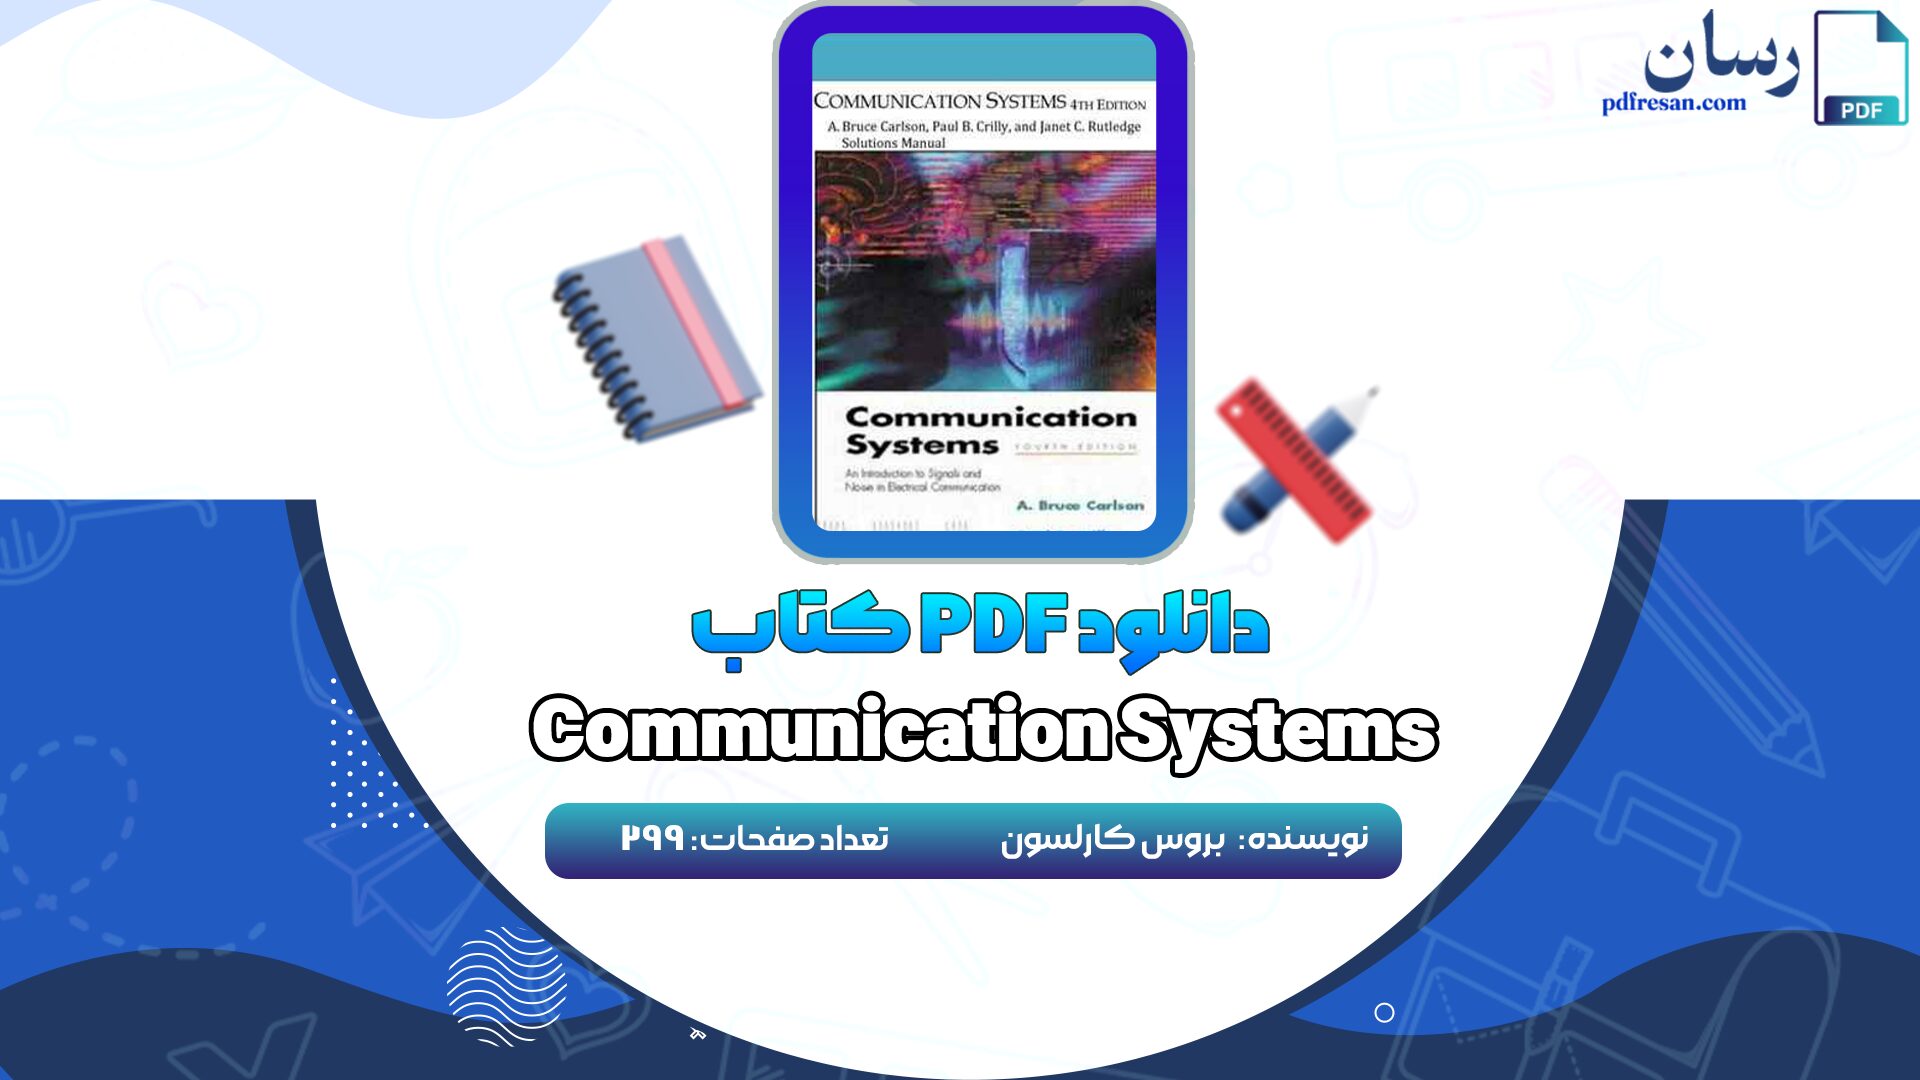 دانلود کتاب Communication Systems بروس کارلسون PDF